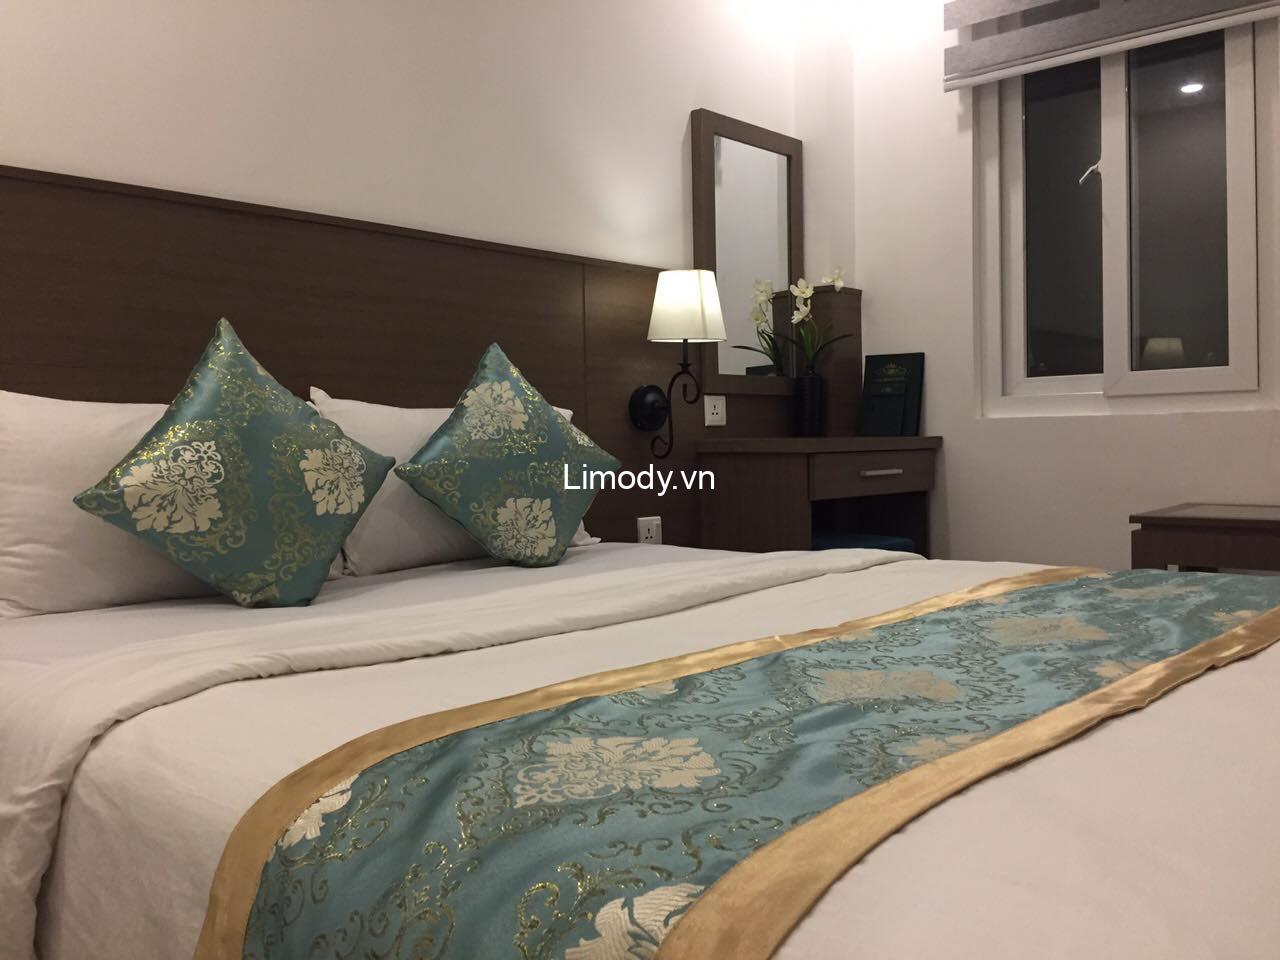 Chỉ bạn Top 10 hostel guesthouse nhà nghỉ gần Tân Sơn Nhất giá rẻ đẹp nhất